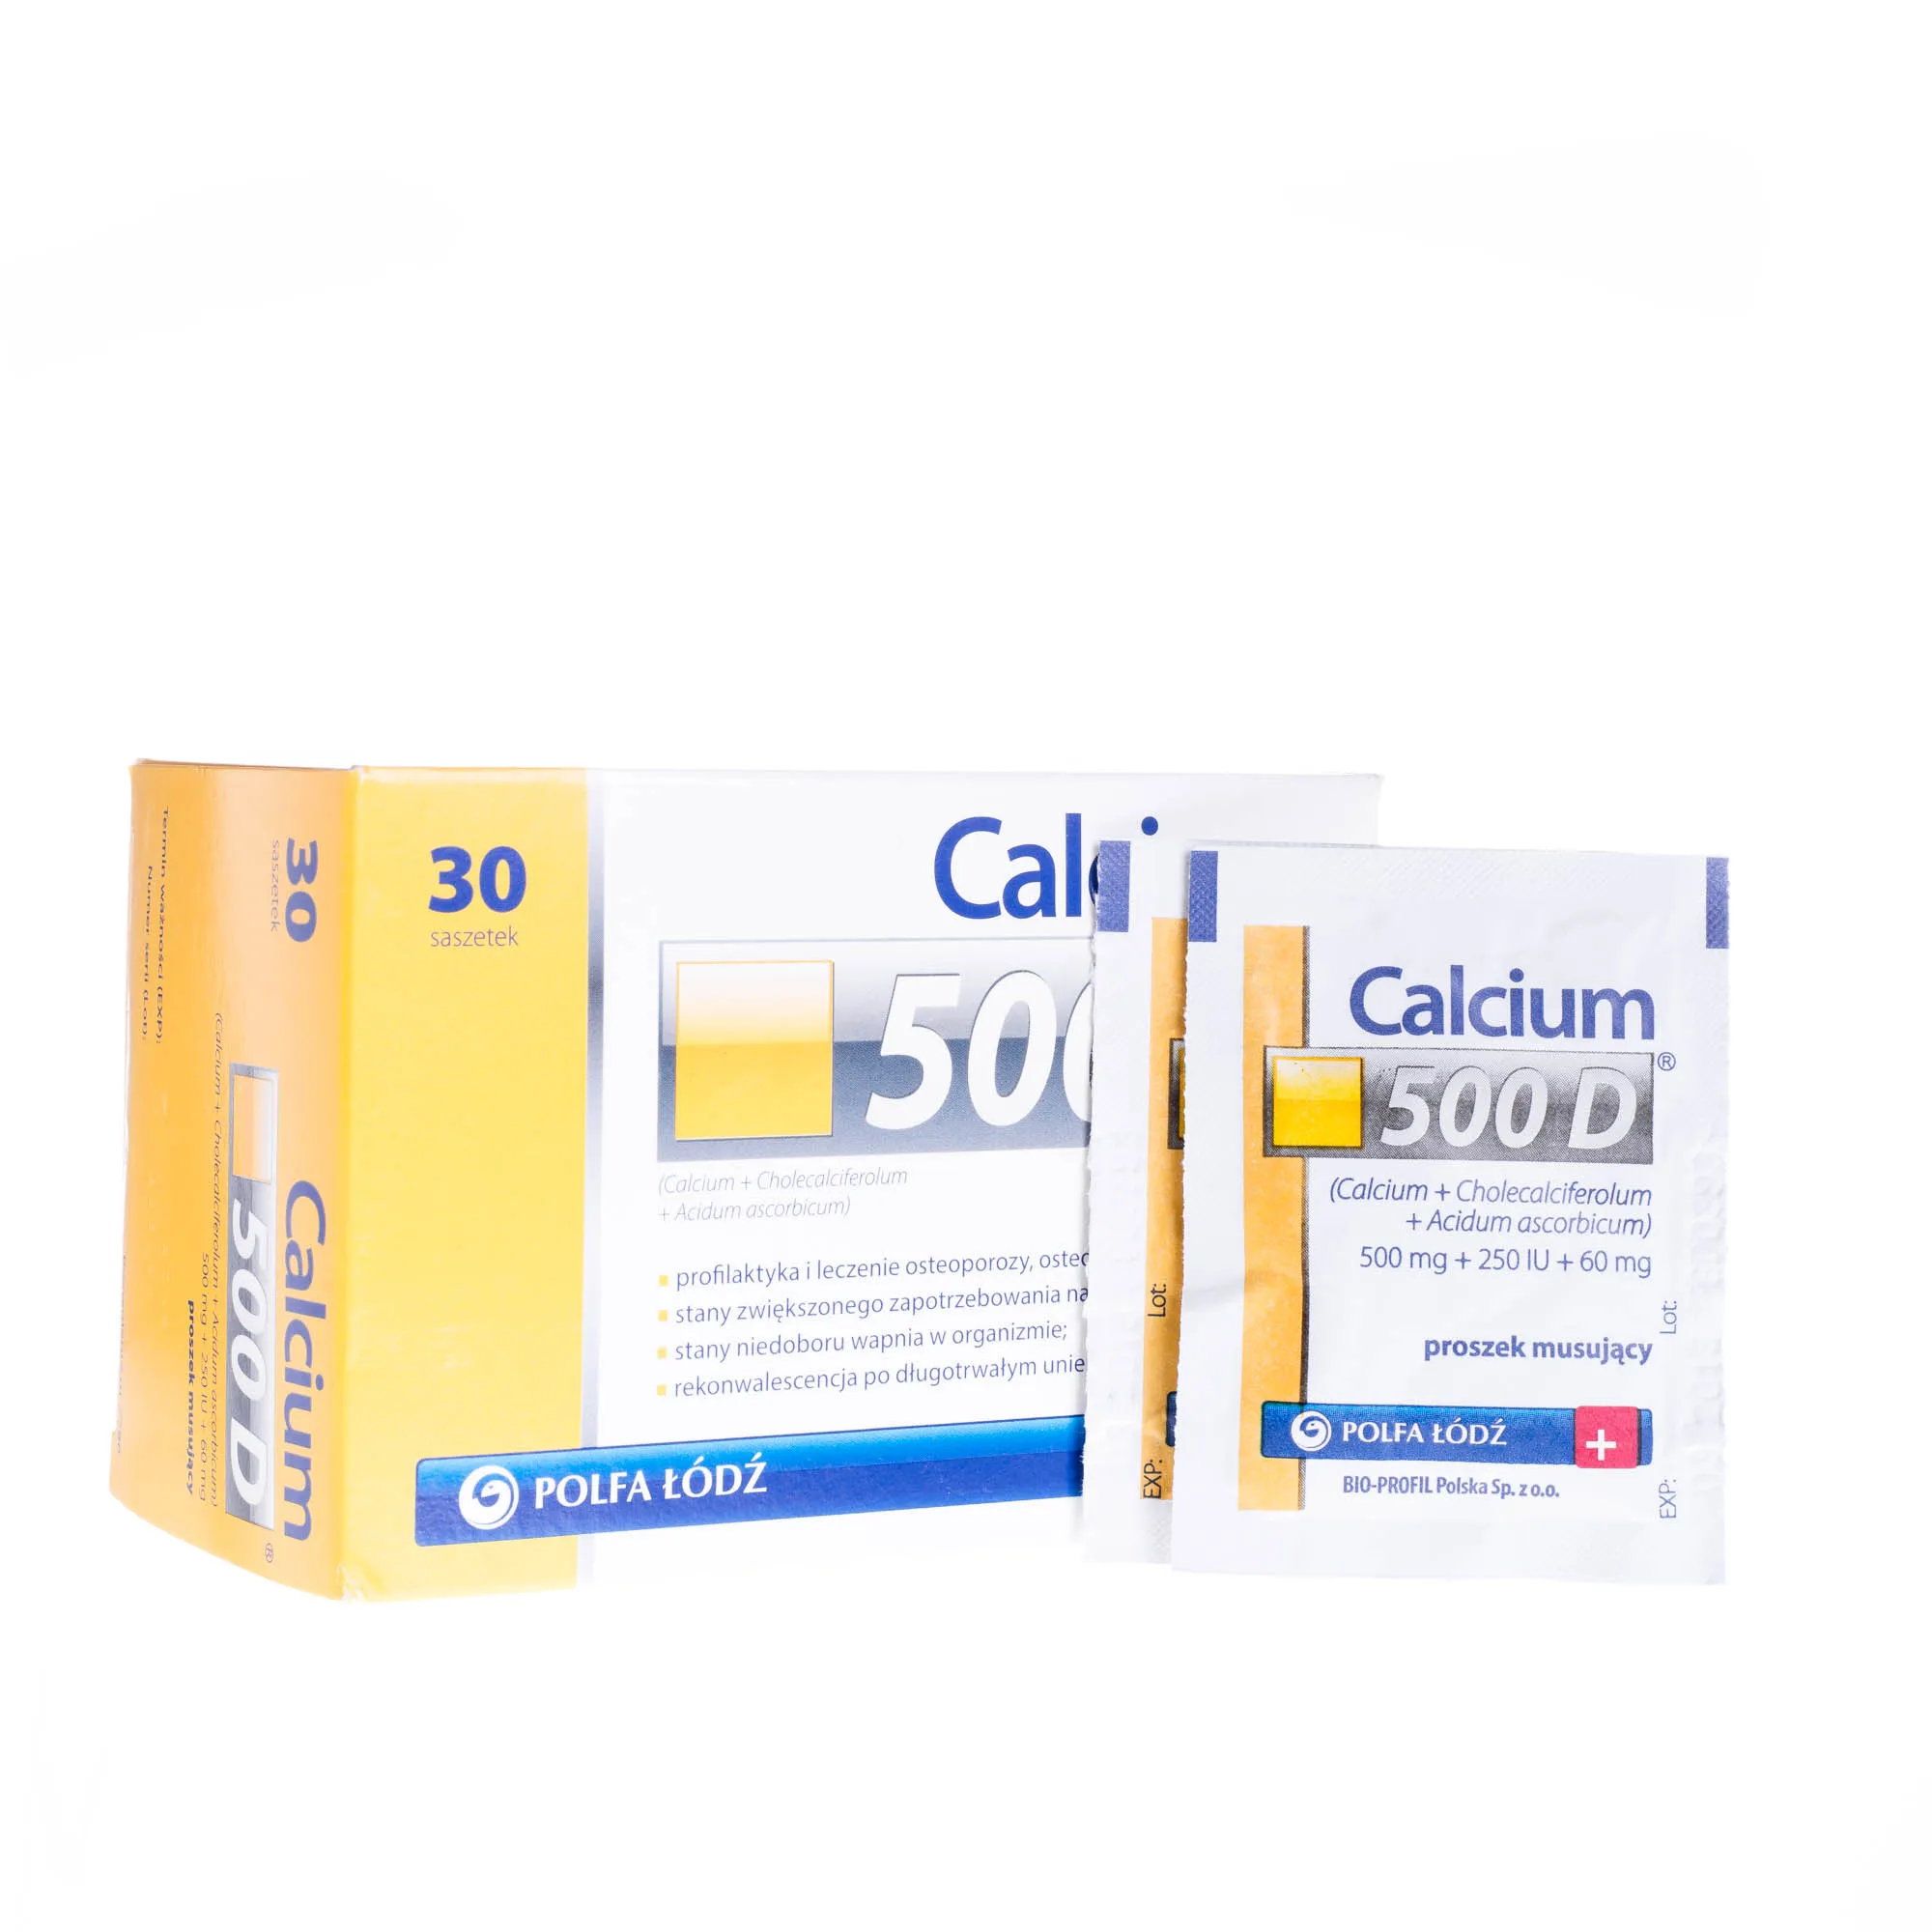 Calcium 500 D 500mg + 250 IU + 60 mg - 30 saszetek z proszkiem musującym stosowanym przy różnego schorzeniach wynikających z niedoboru wapnia 